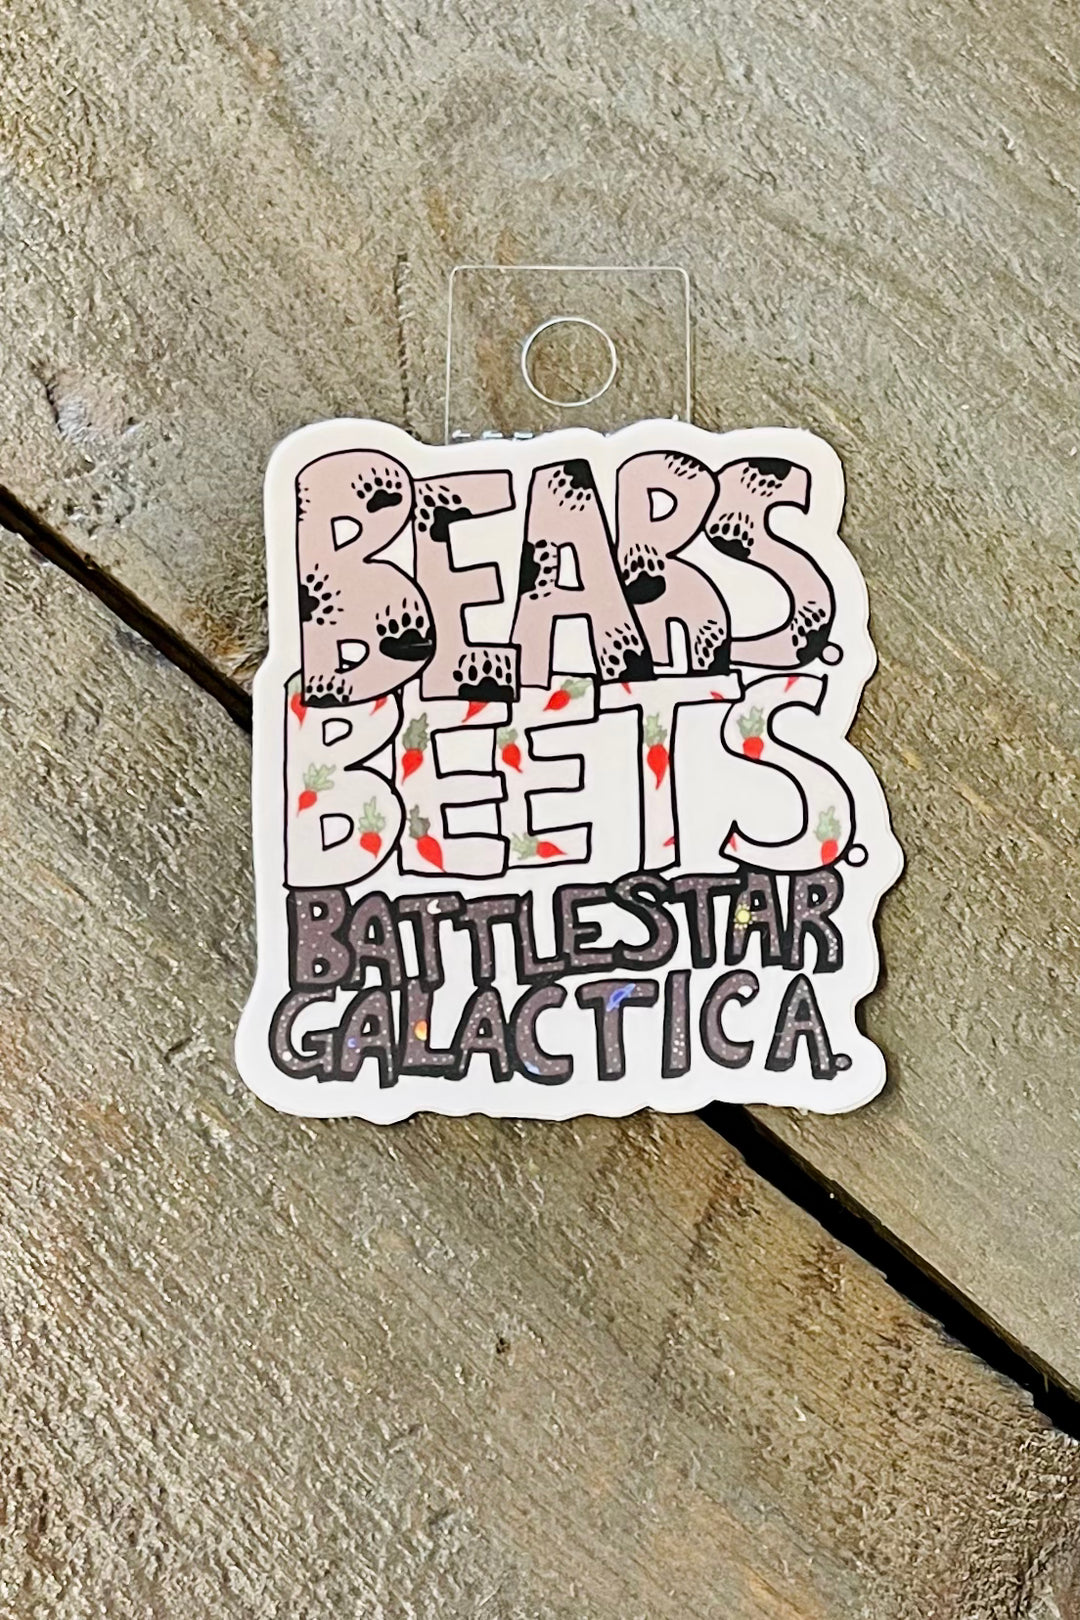 Bears. Beet. Battlestar Galactica. Sticker